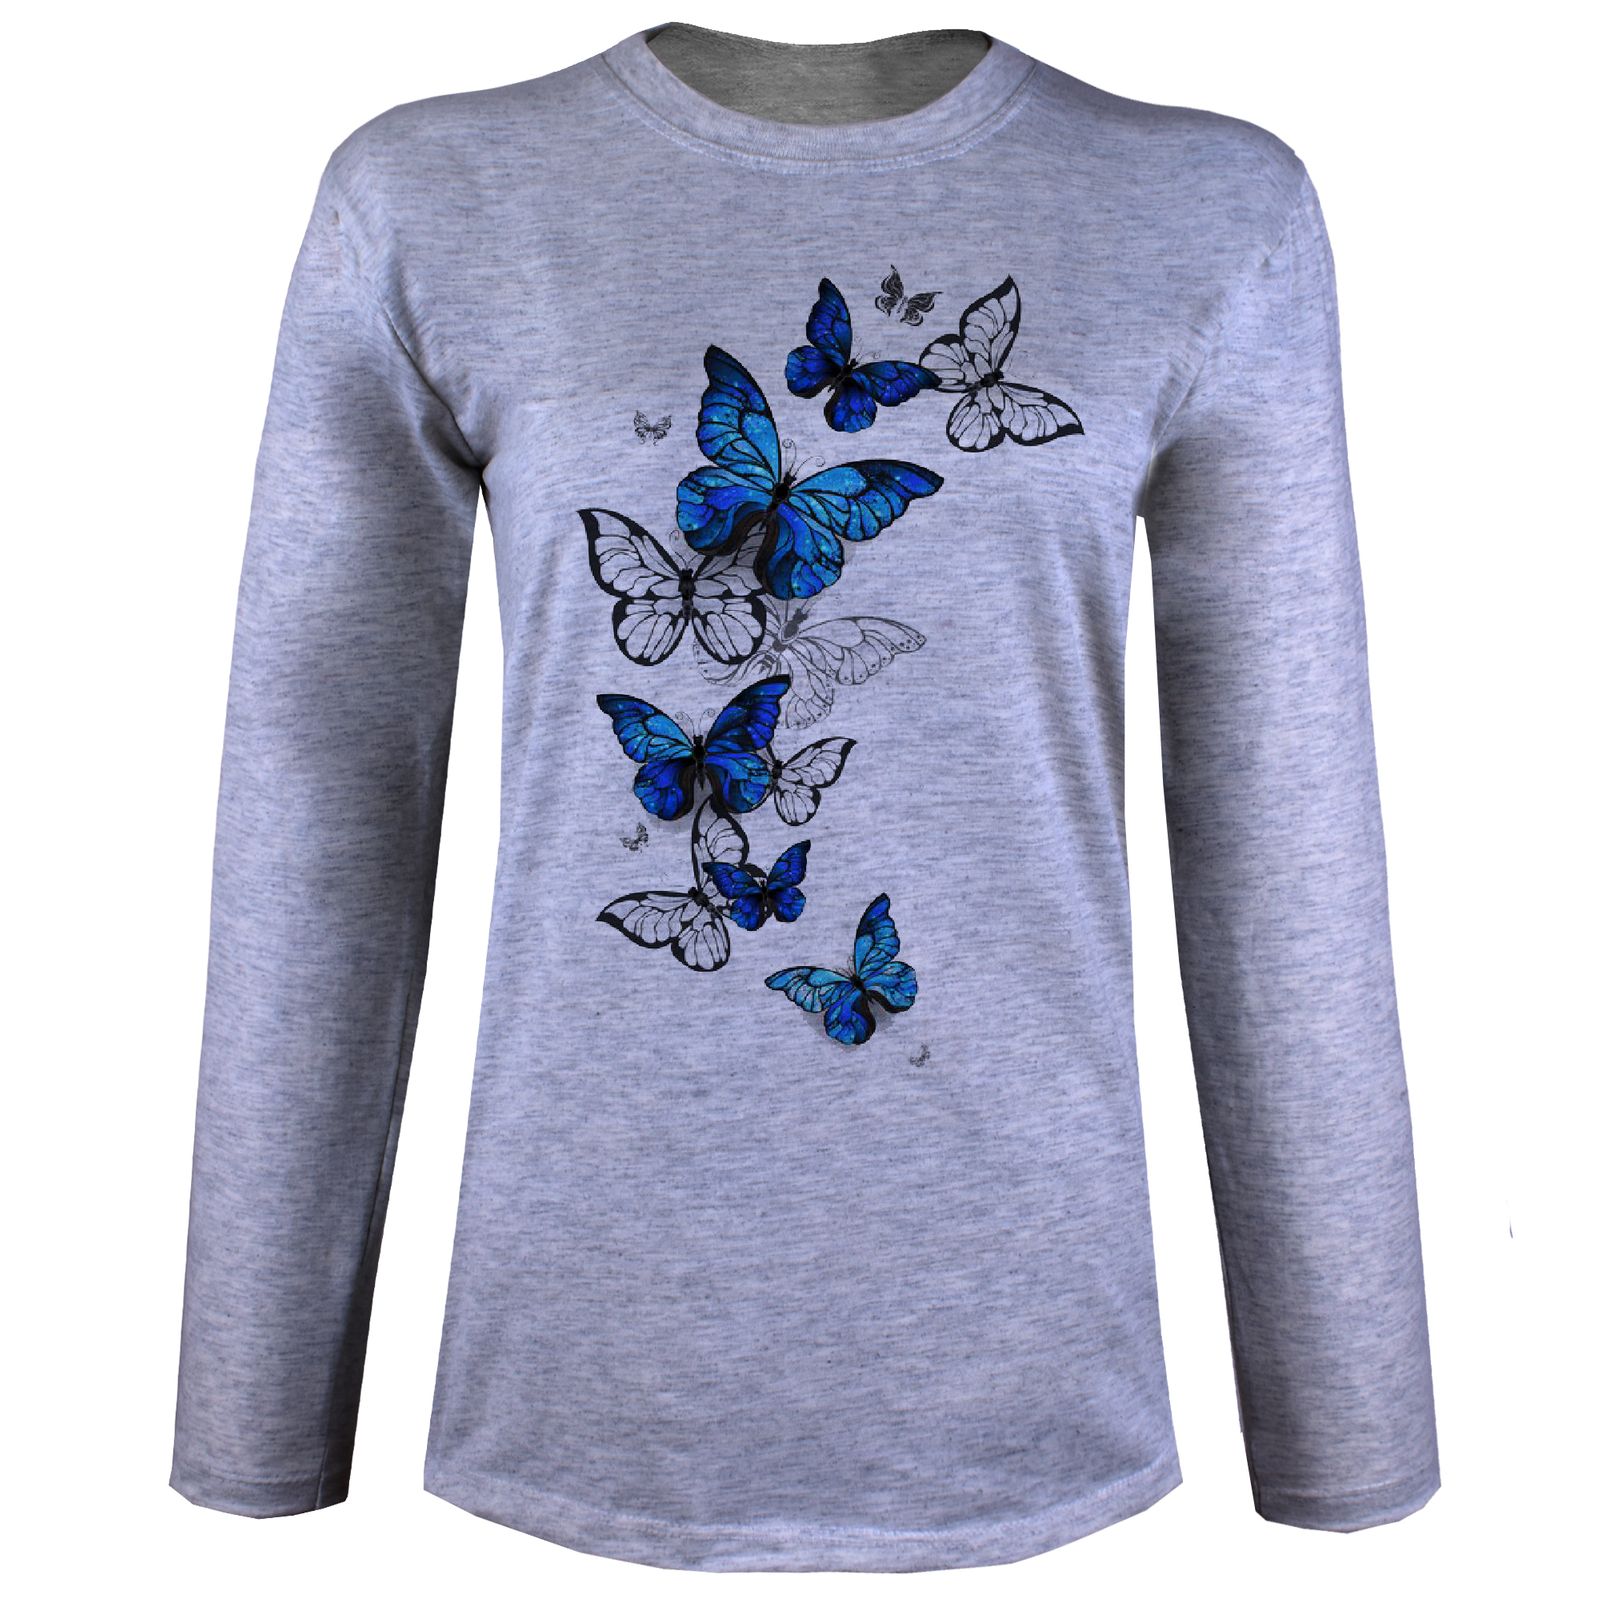 تی شرت آستین بلند زنانه مدل پروانه آبی W30 -  - 1